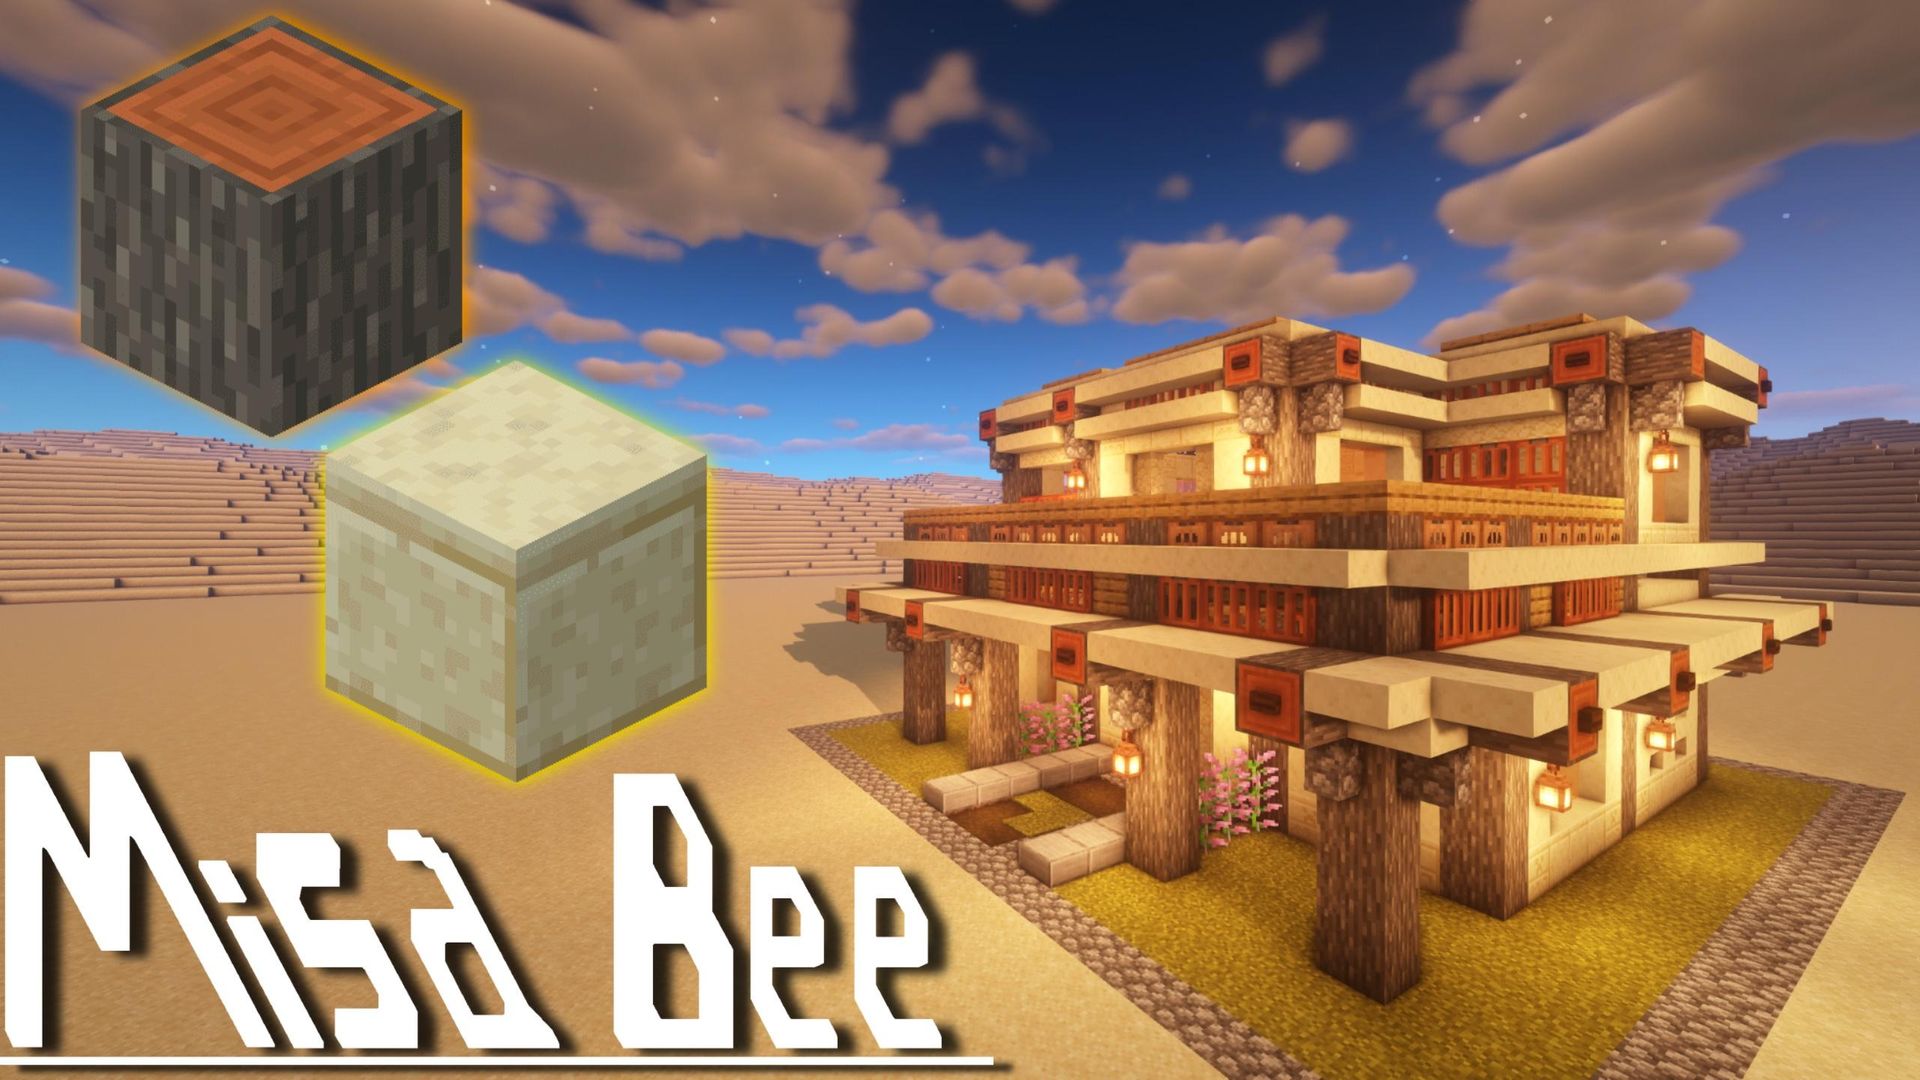 心得 沙漠建築 沙岩雙層陽台平房 Minecraft 我的世界 當個創世神 哈啦板 巴哈姆特